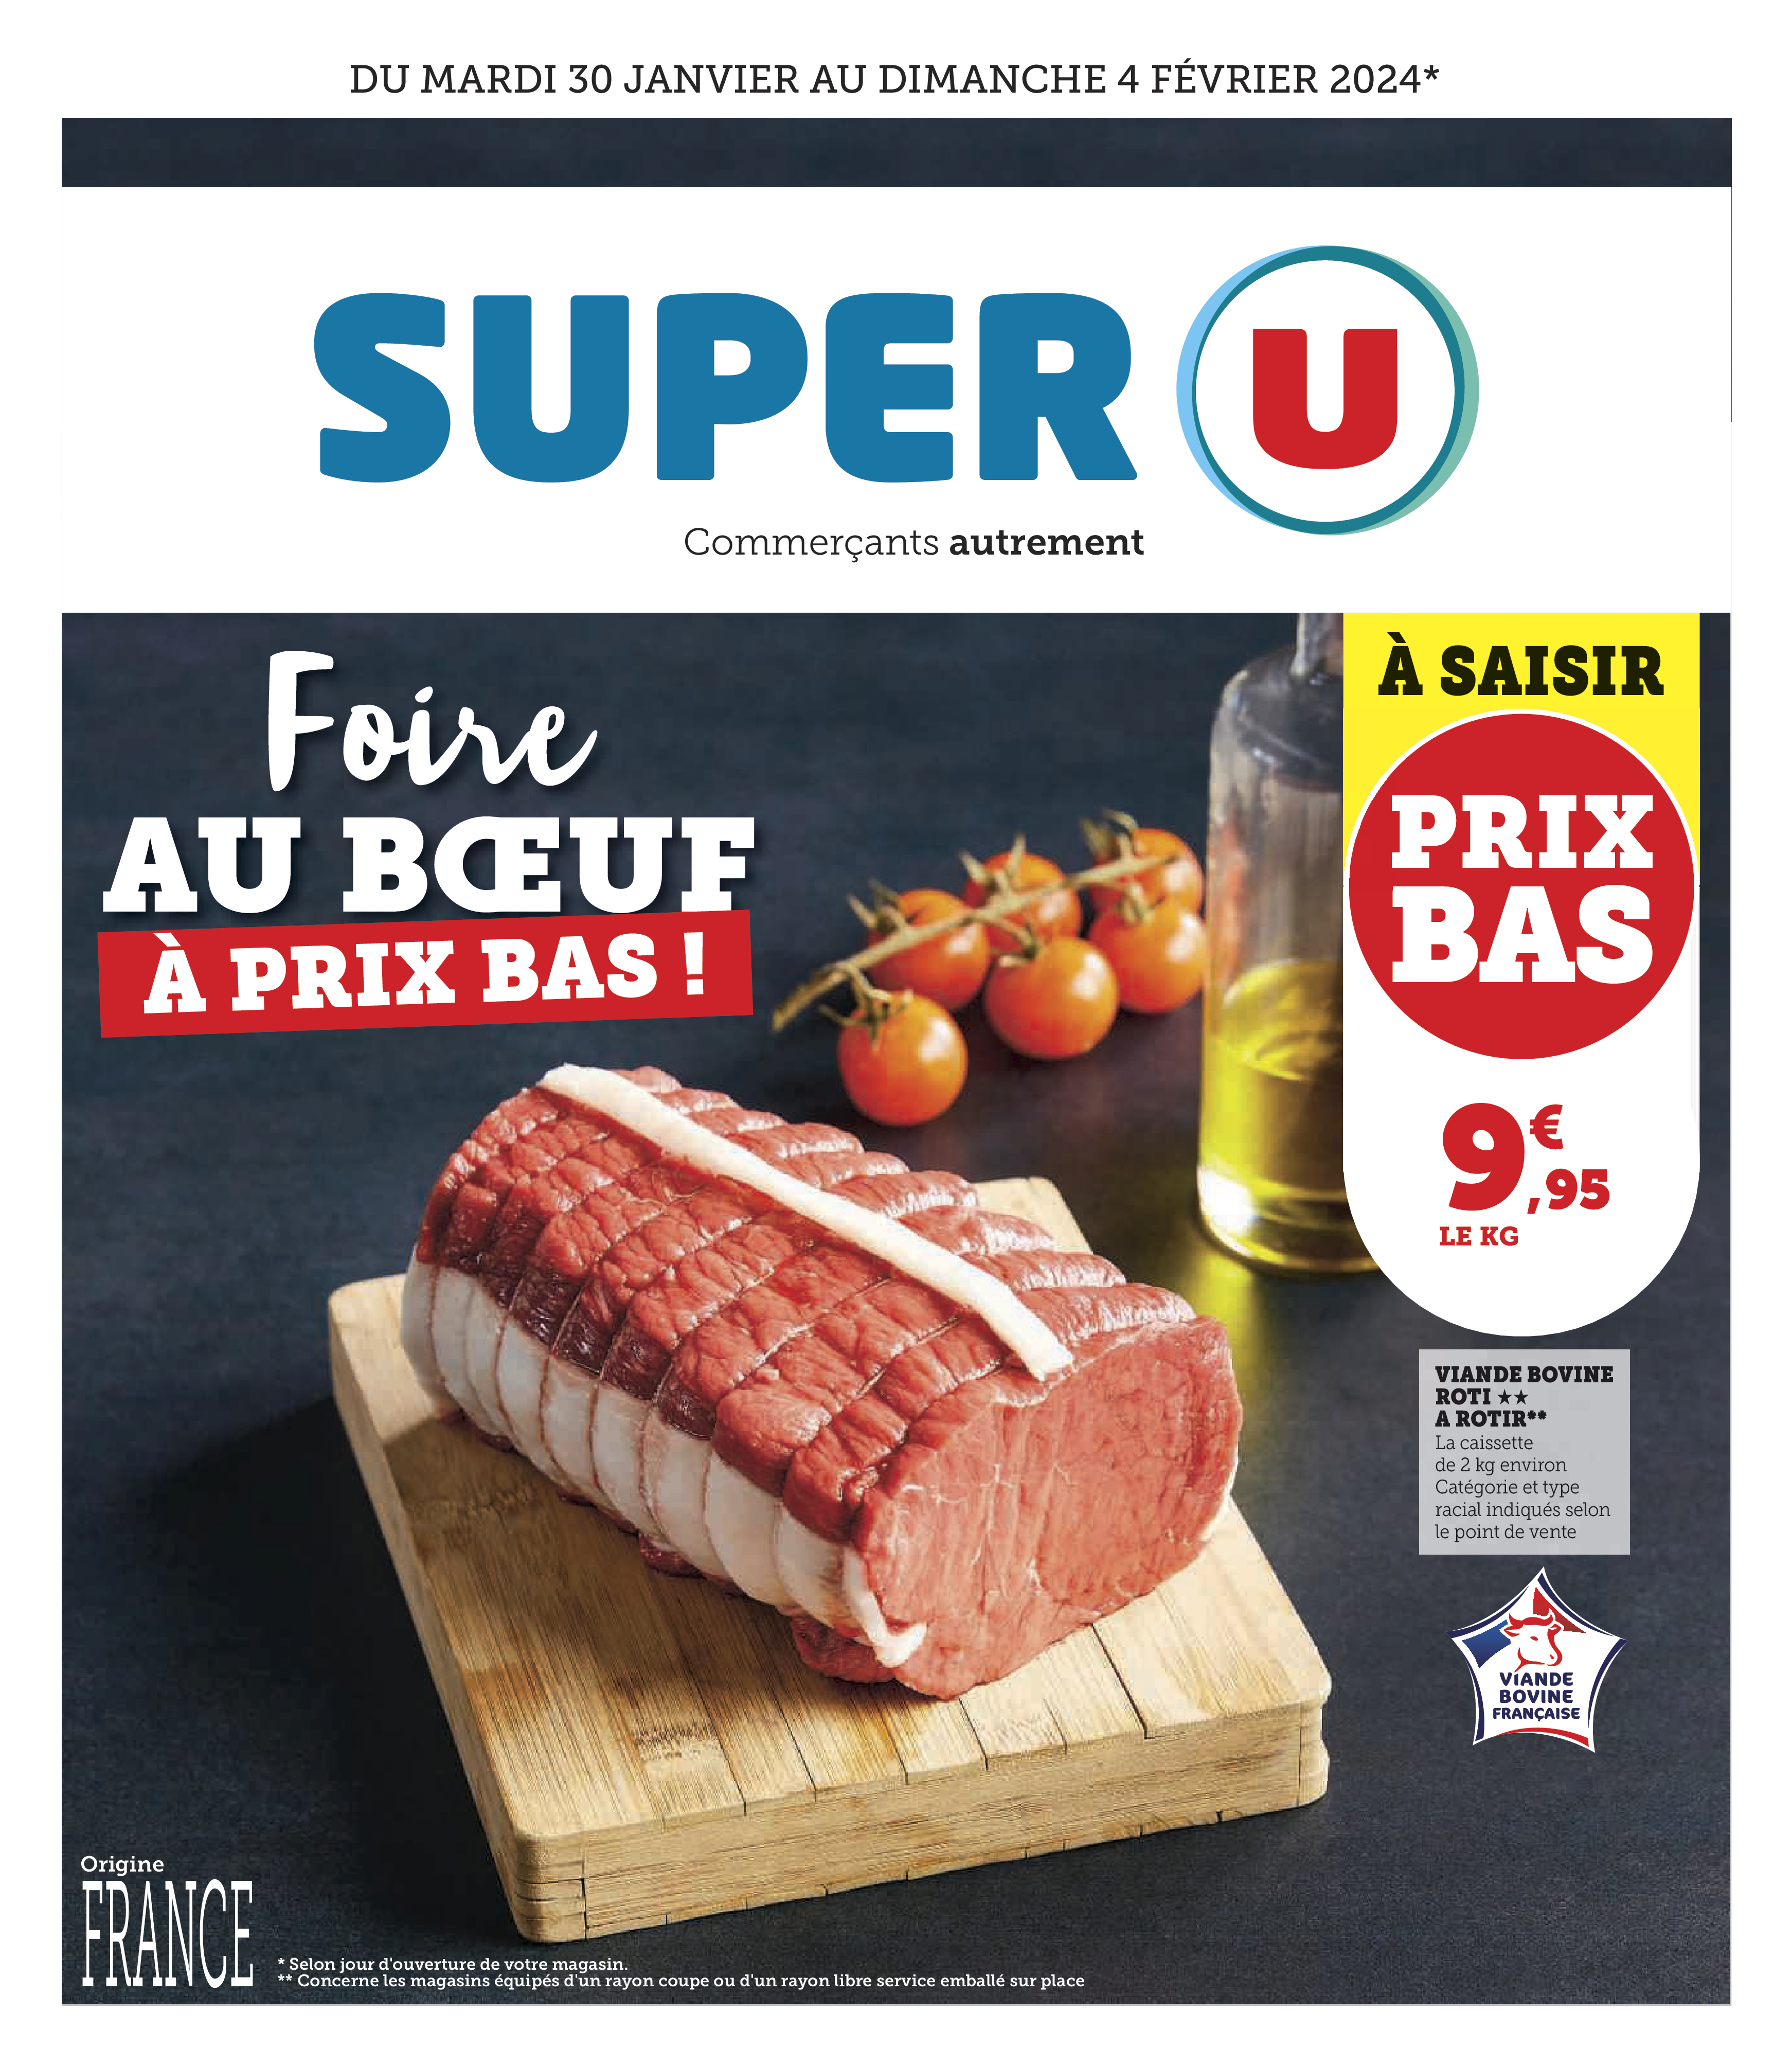 Soupline Super U ᐅ Promos et prix dans le catalogue de la semaine